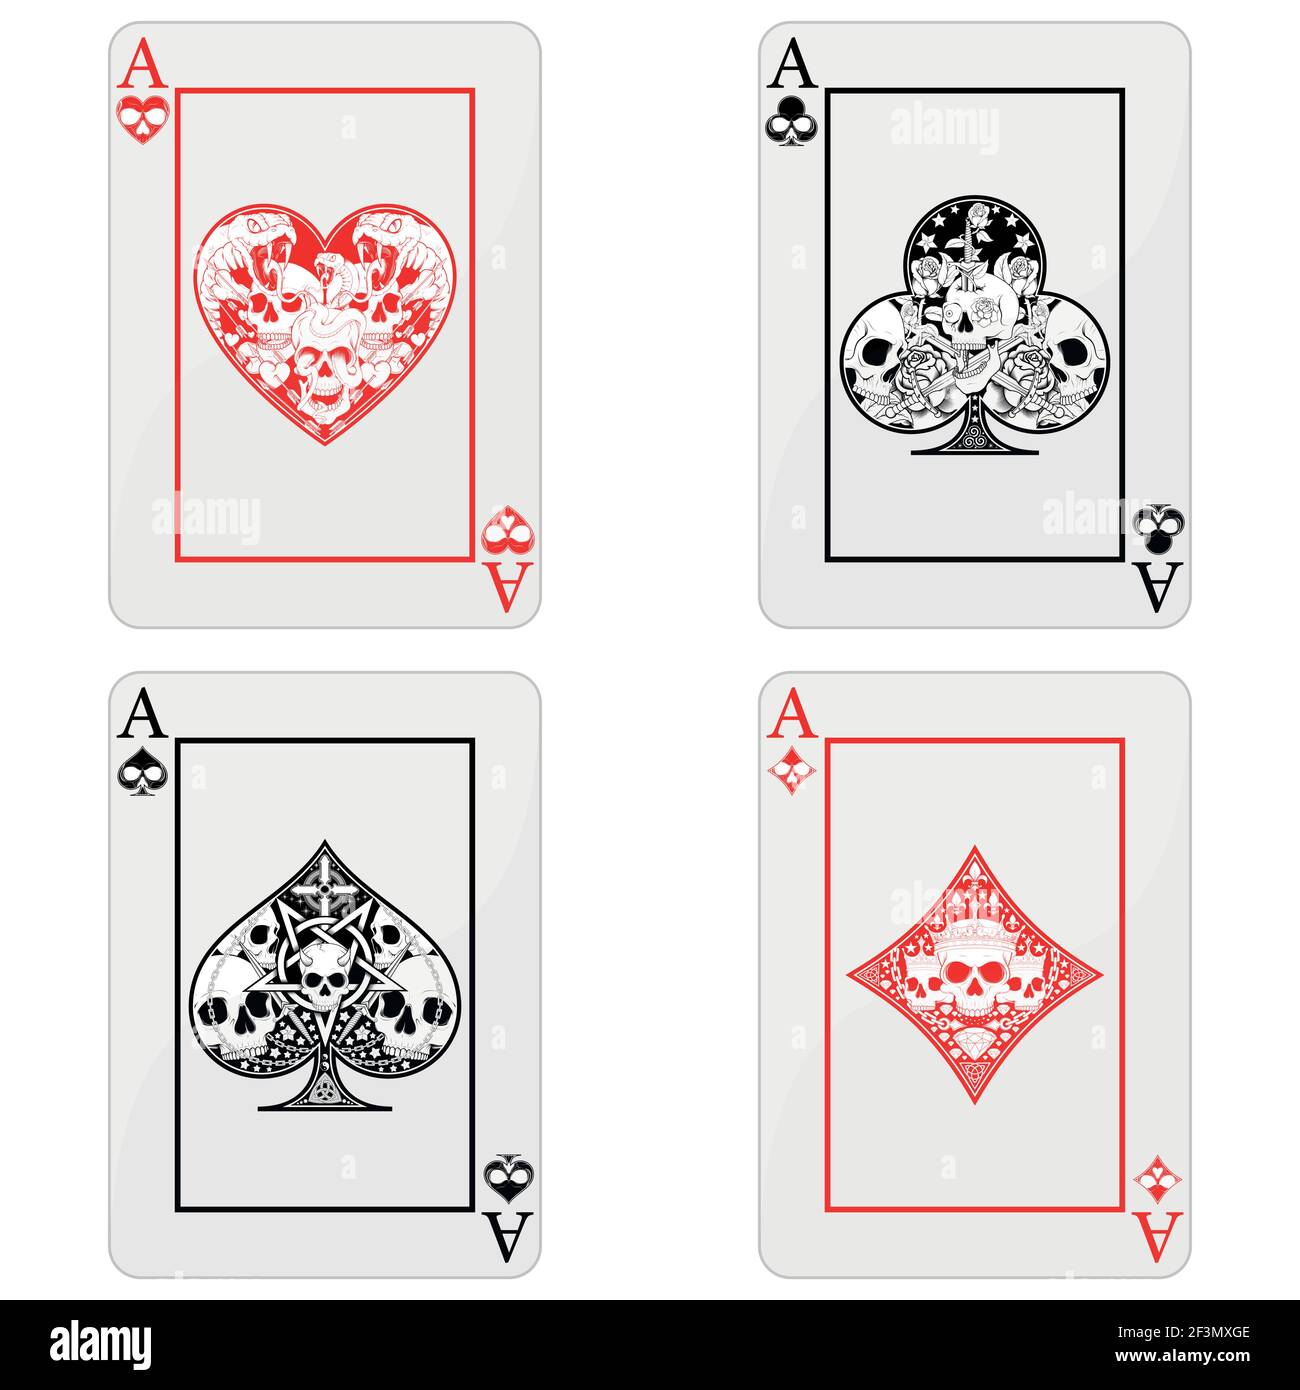 Conception vectorielle de cartes de poker avec des crânes, les symboles du coeur, du diamant, du trèfle et de l'as avec différents styles Illustration de Vecteur